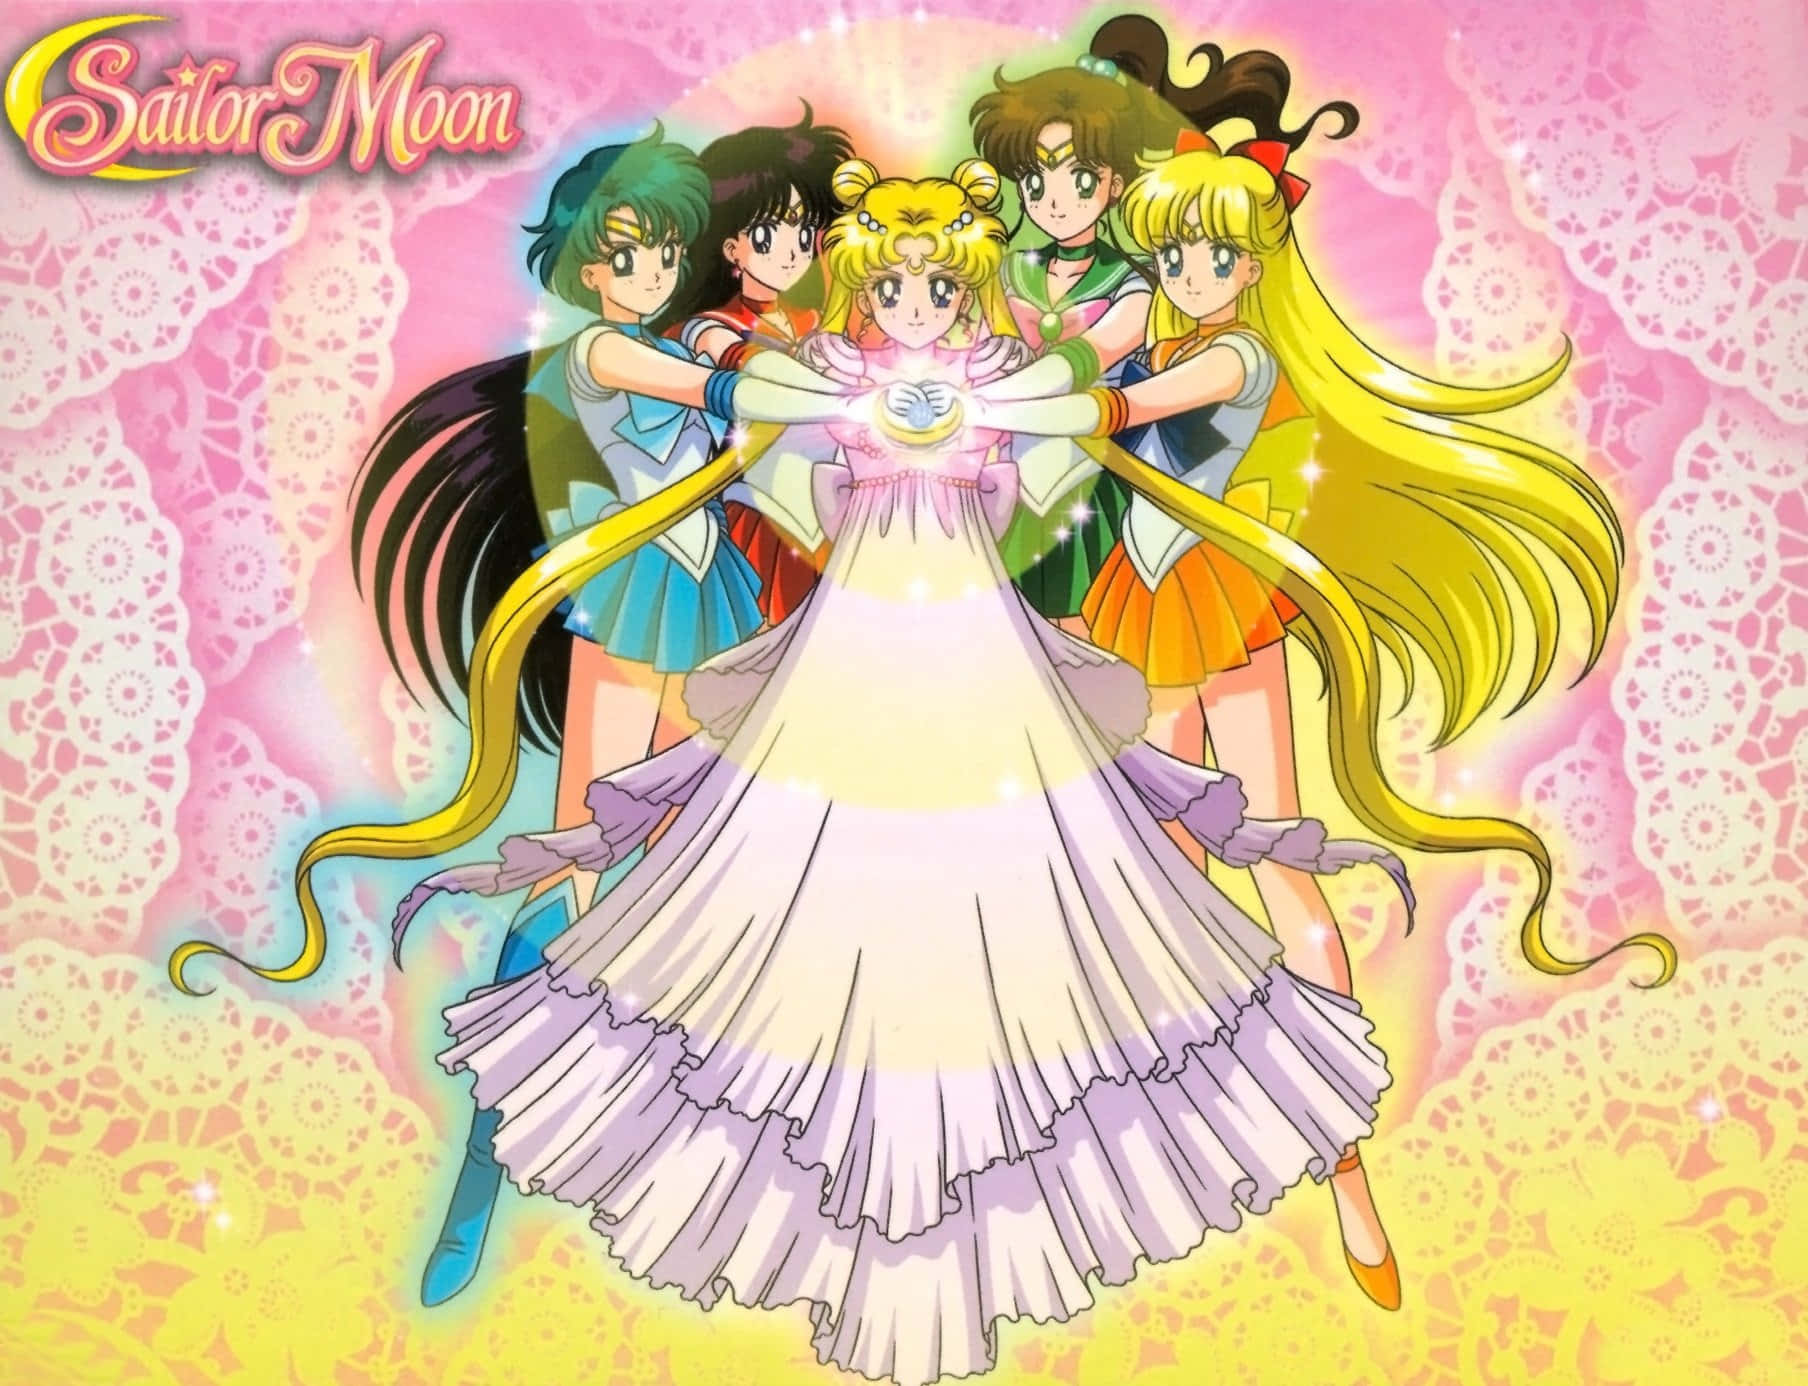 Usagi Tsukino er klar til at kæmpe mod det onde som den magtfulde Sailor Moon! Wallpaper